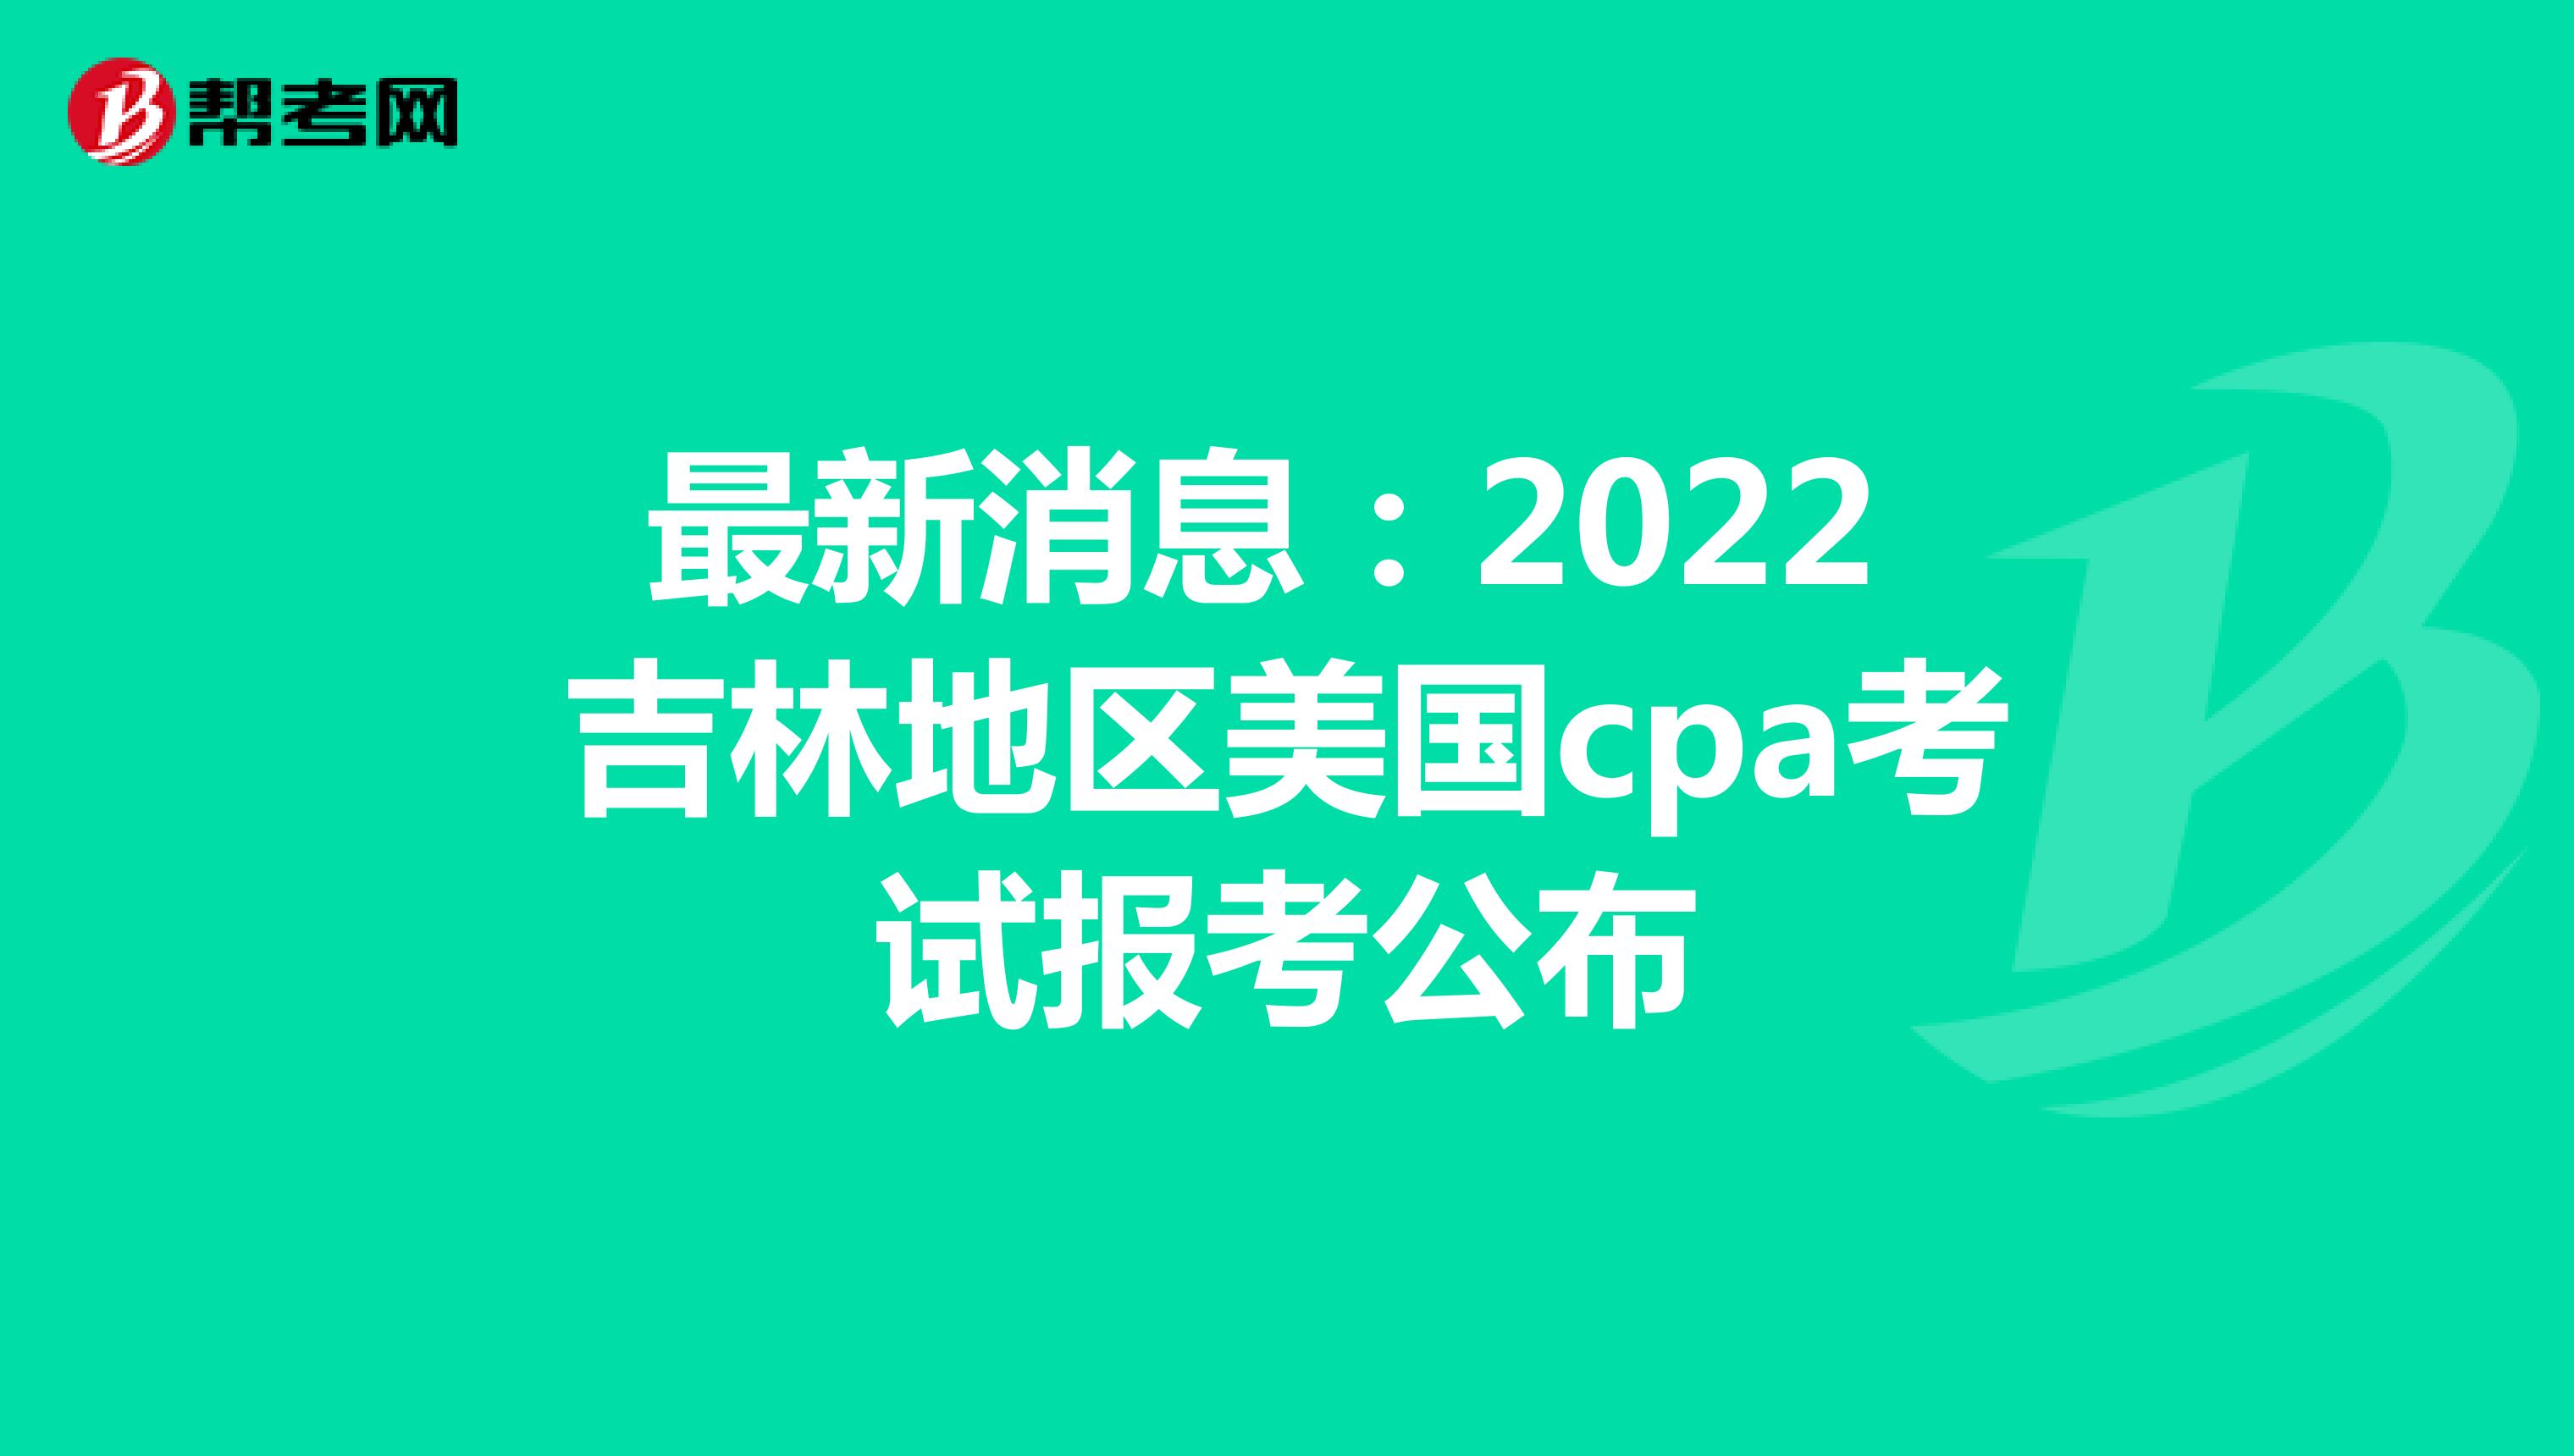 最新消息：2022吉林地区美国cpa考试报考公布